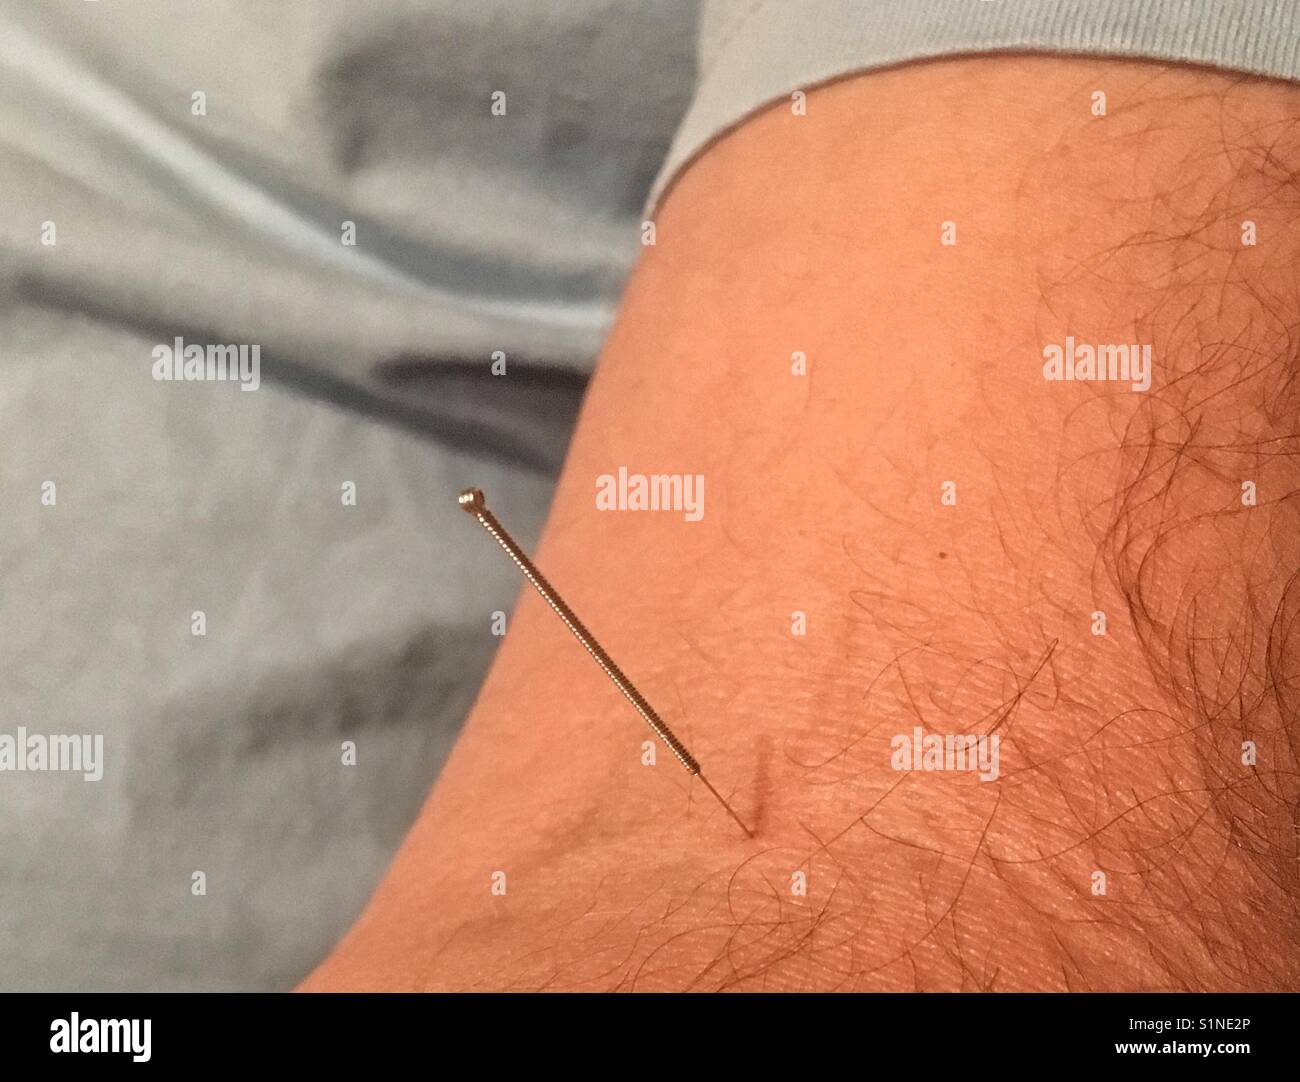 Aiguille d'acupuncture dans un bras du Mans Banque D'Images